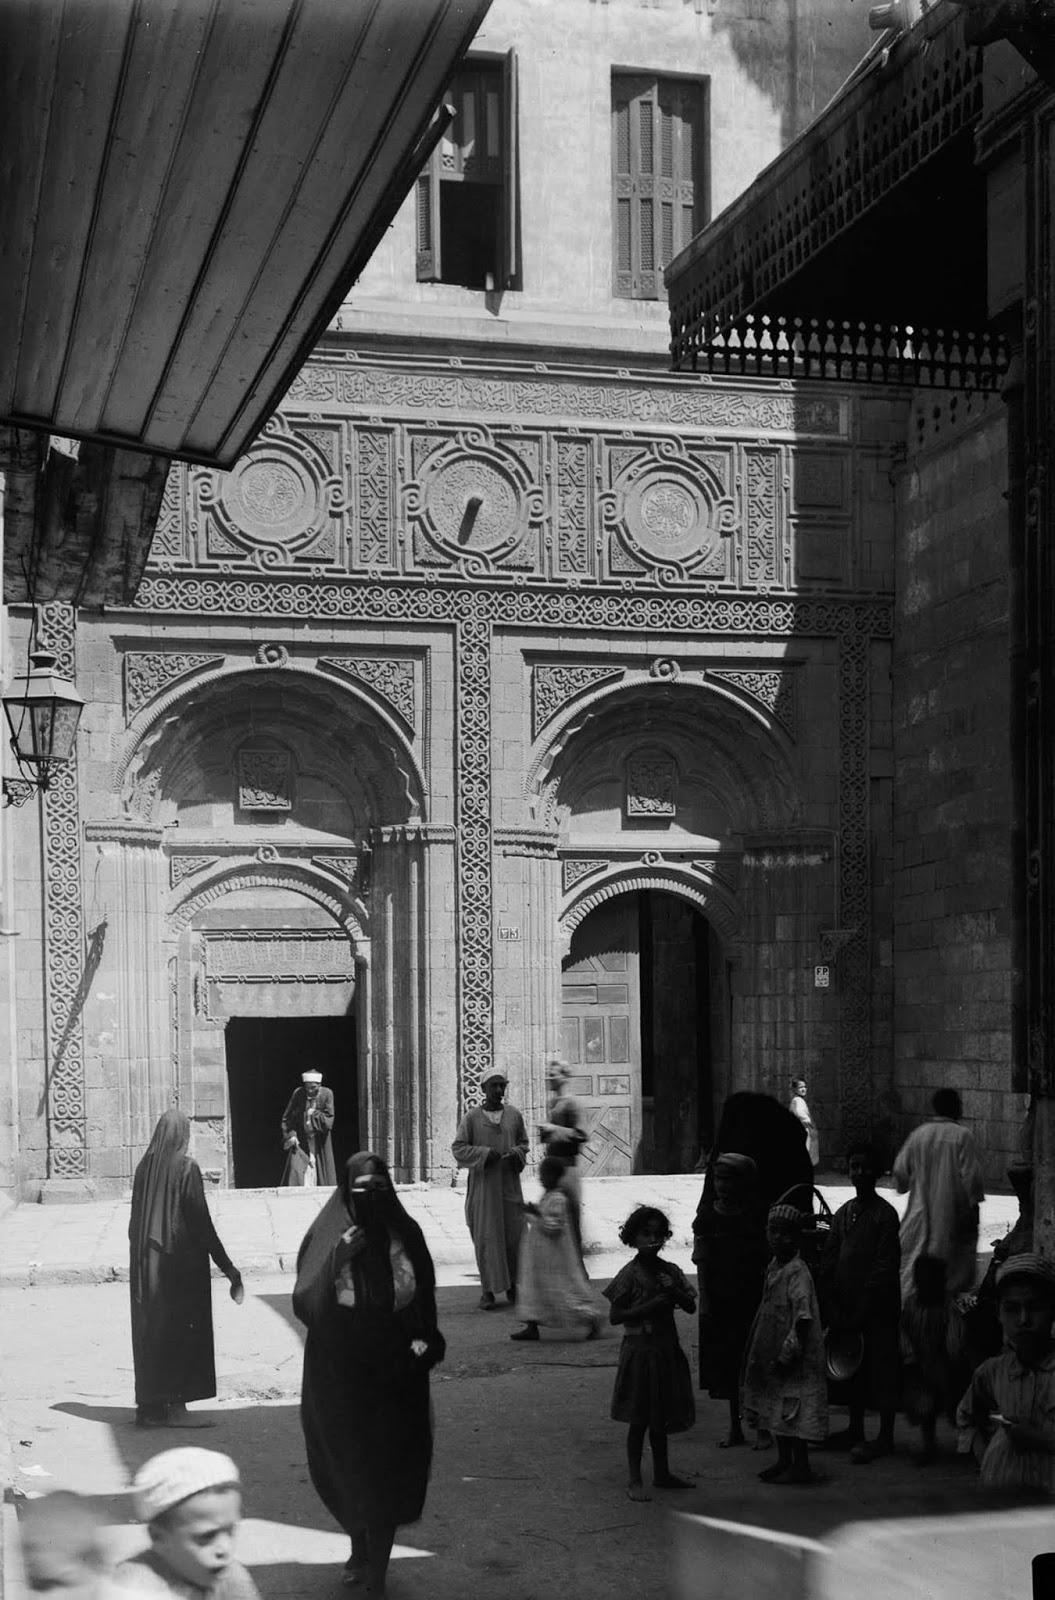 Les rues animées du Vieux Caire, 1900-1935